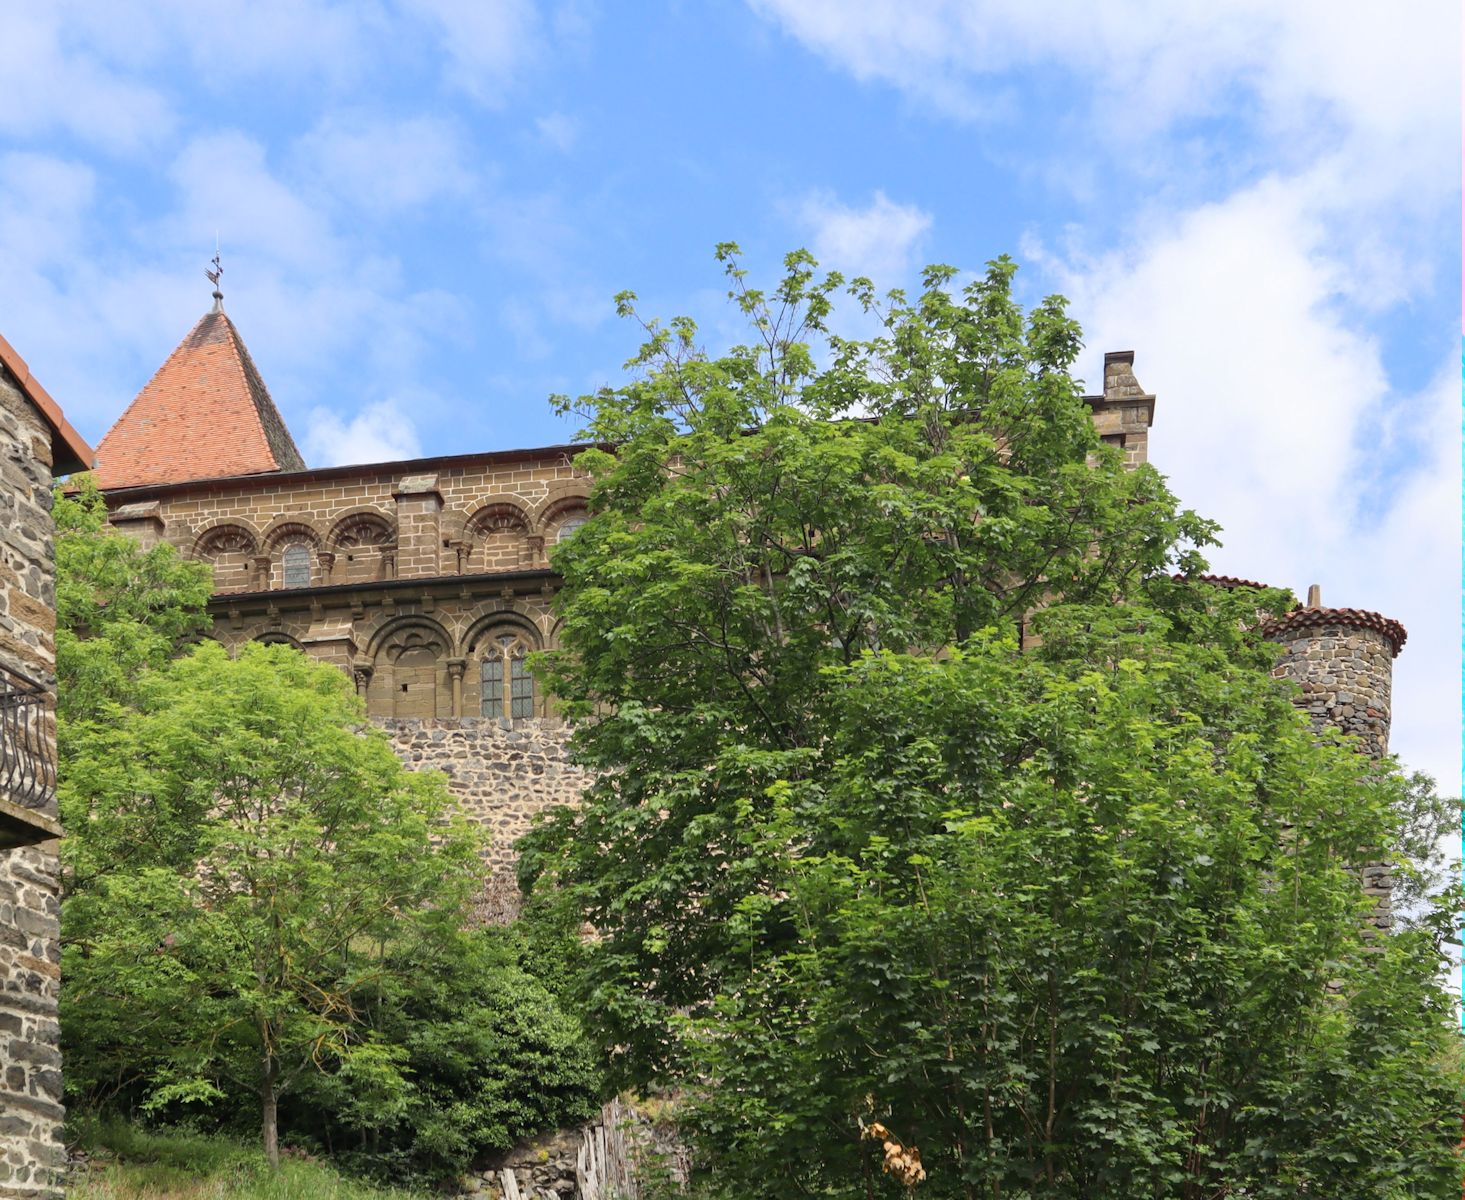 hoch auf dem Berg über dem kleinen Dorf gelegen: die Kirche des ehemaligen Klosters in Chanteuges